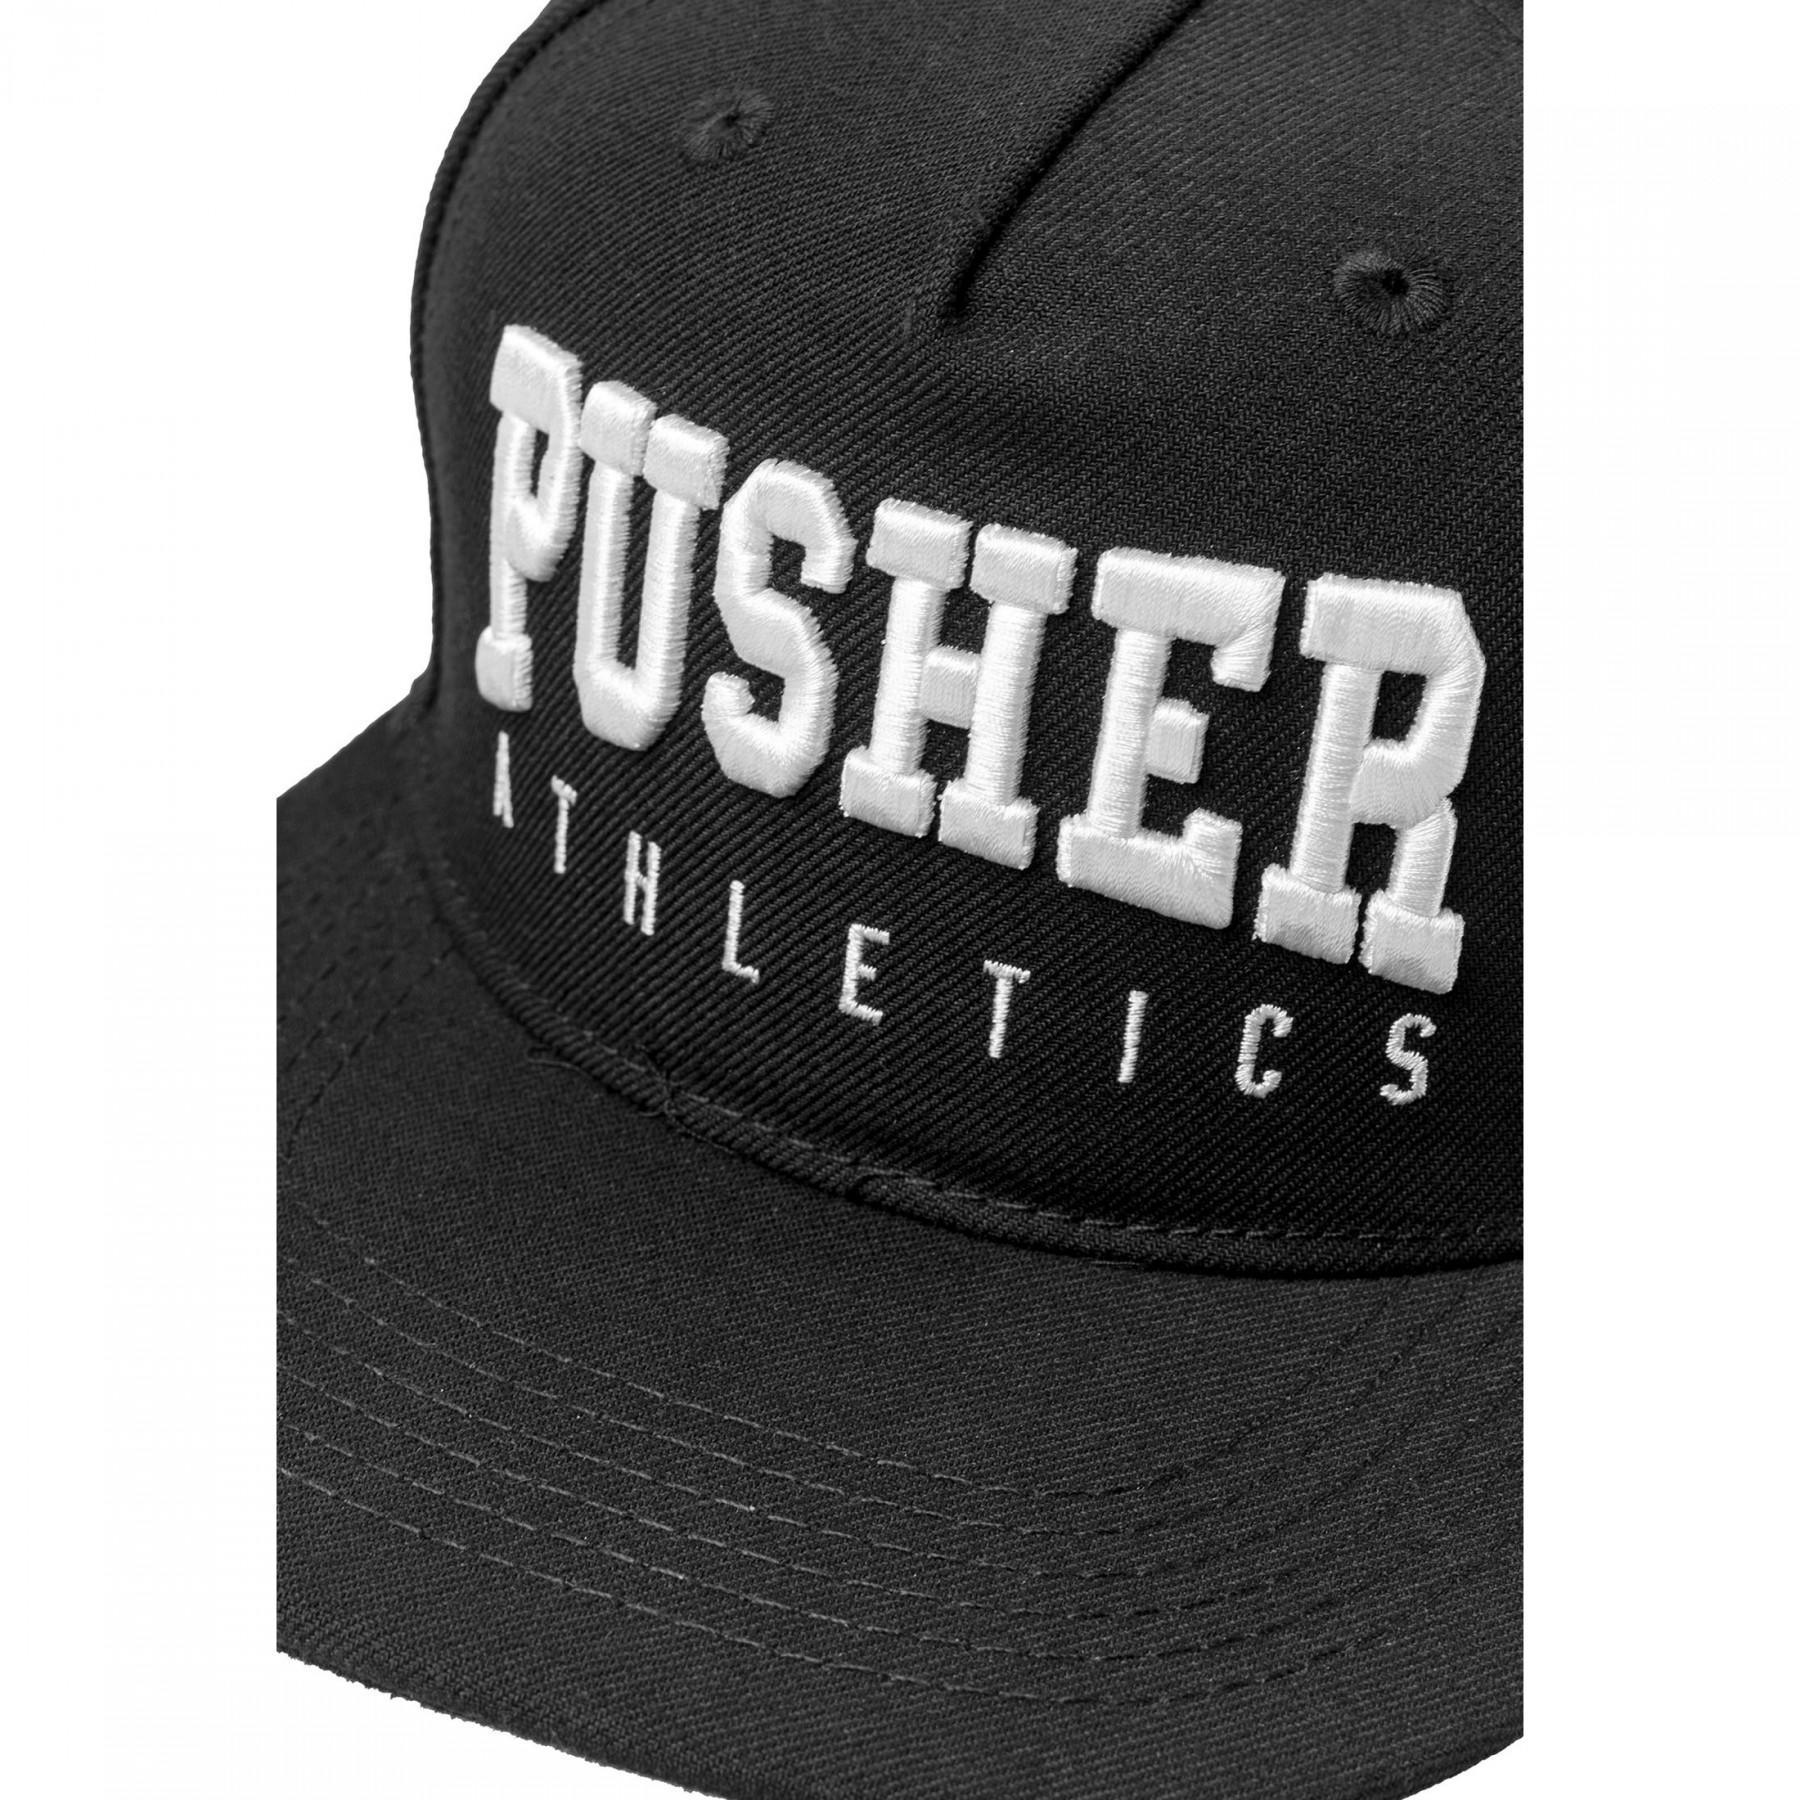 Cap Pusher Athletics